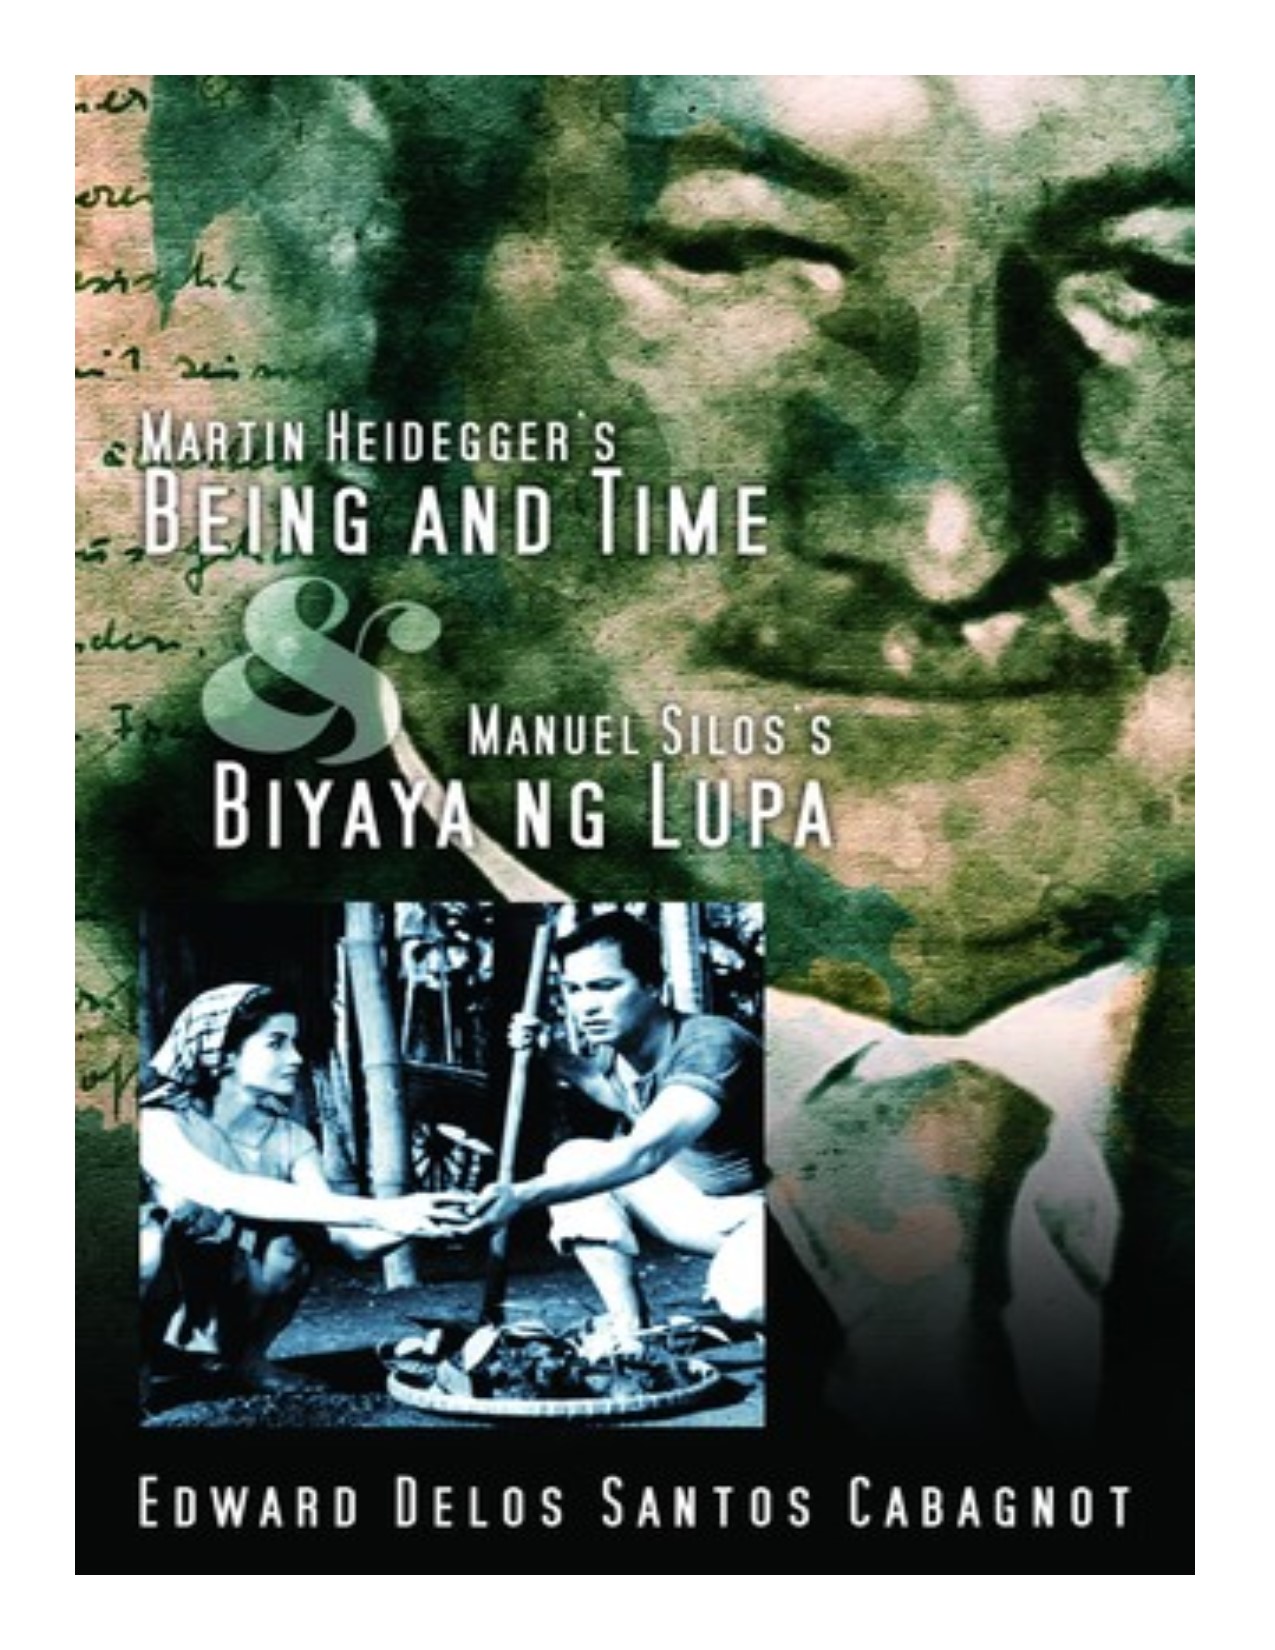 Martin Heidegger's Being and time and Manuel Silos's Biyaya ng lupa